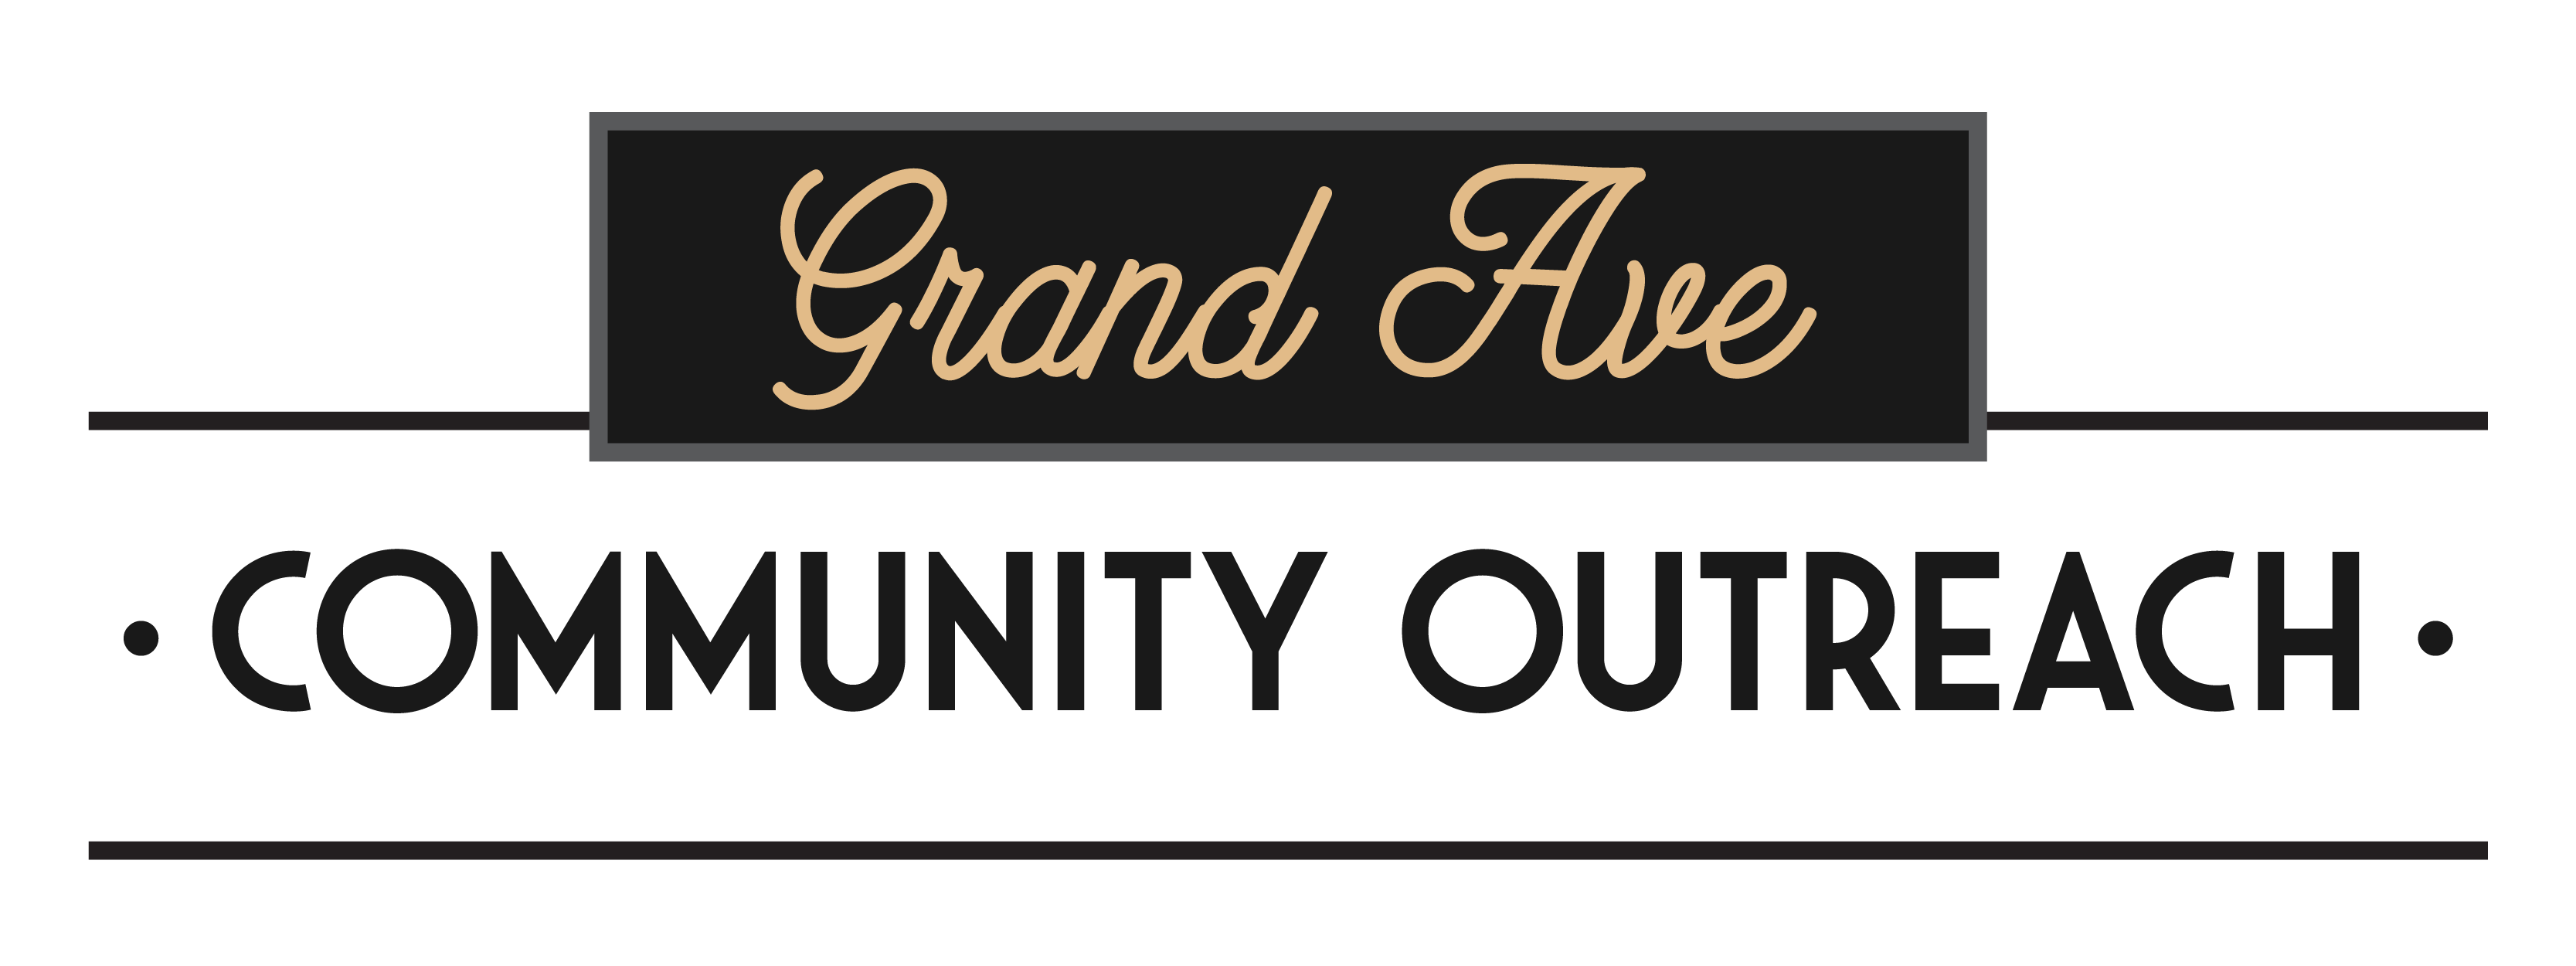 Grand Avenue Community Outreach logo